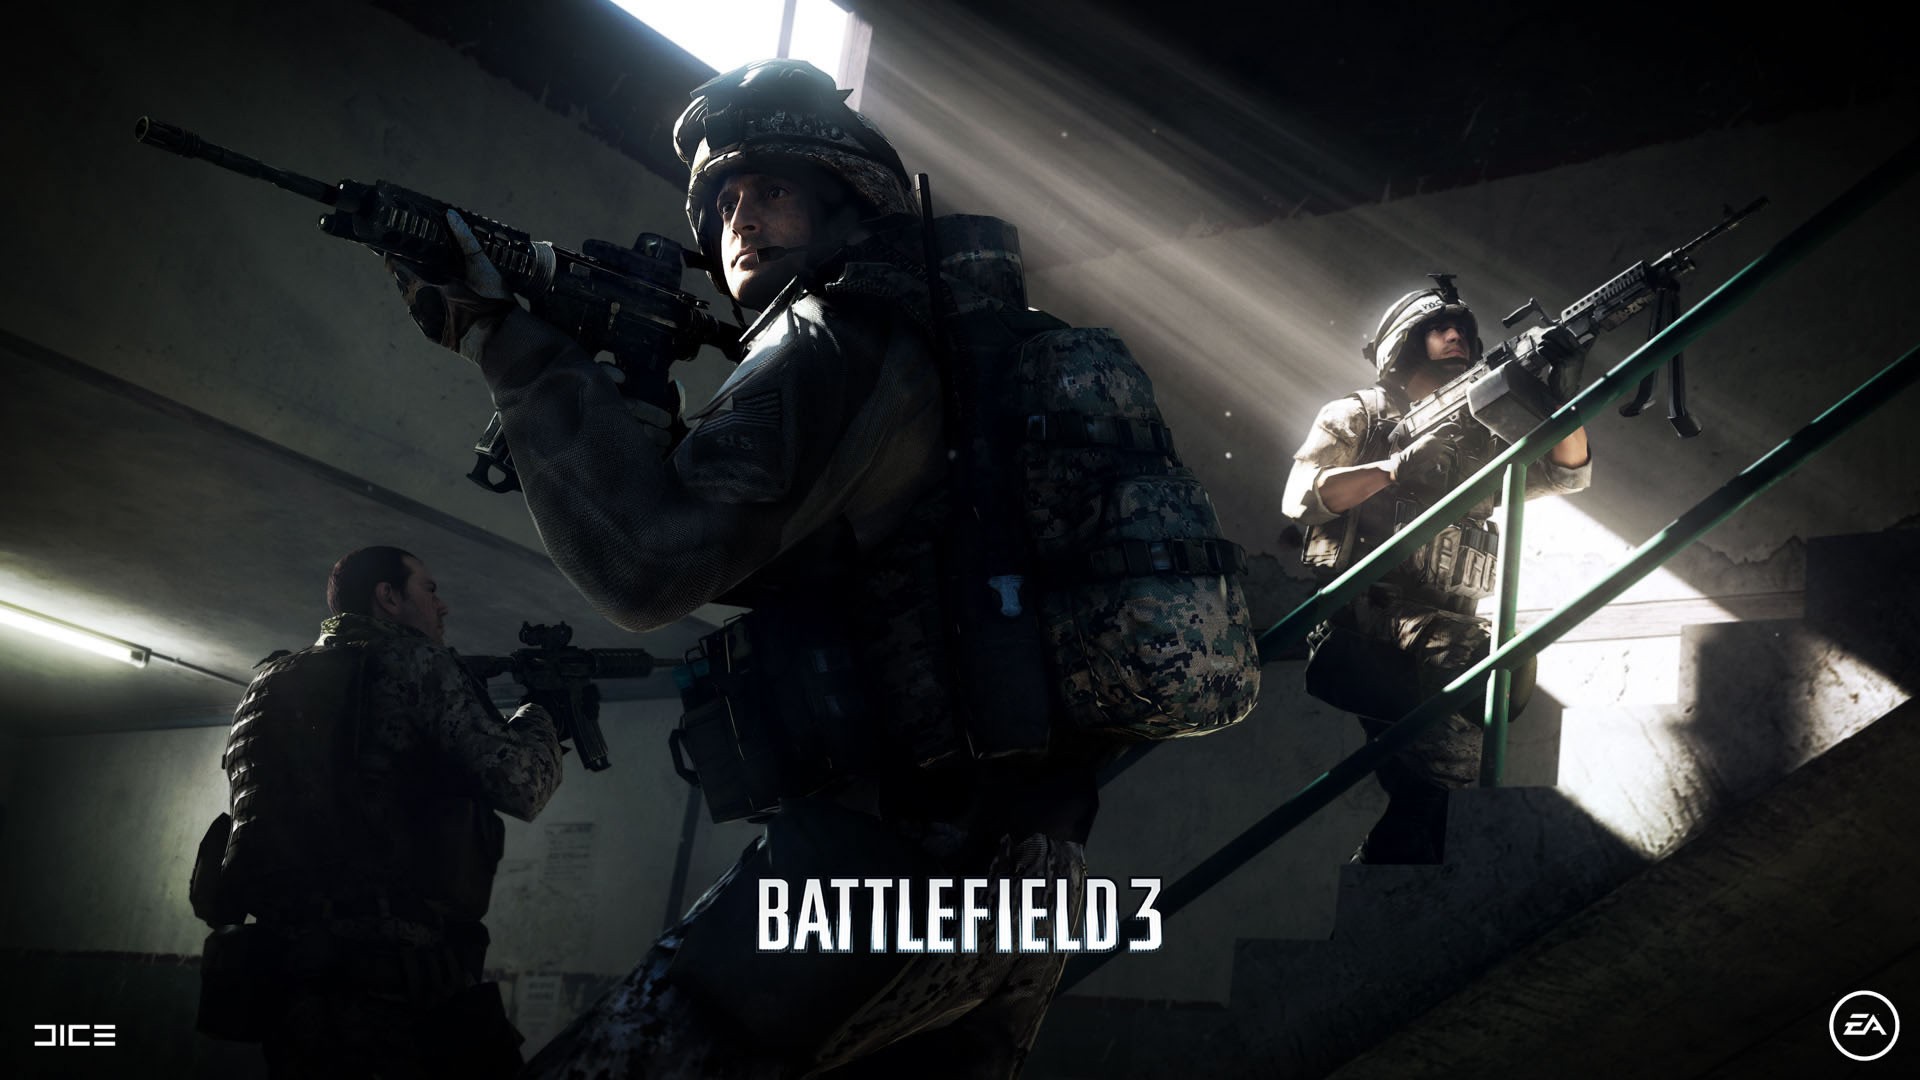 видеоигры, пистолеты, EOTech, Battlefield 3, Electronic Arts - обои на рабочий стол